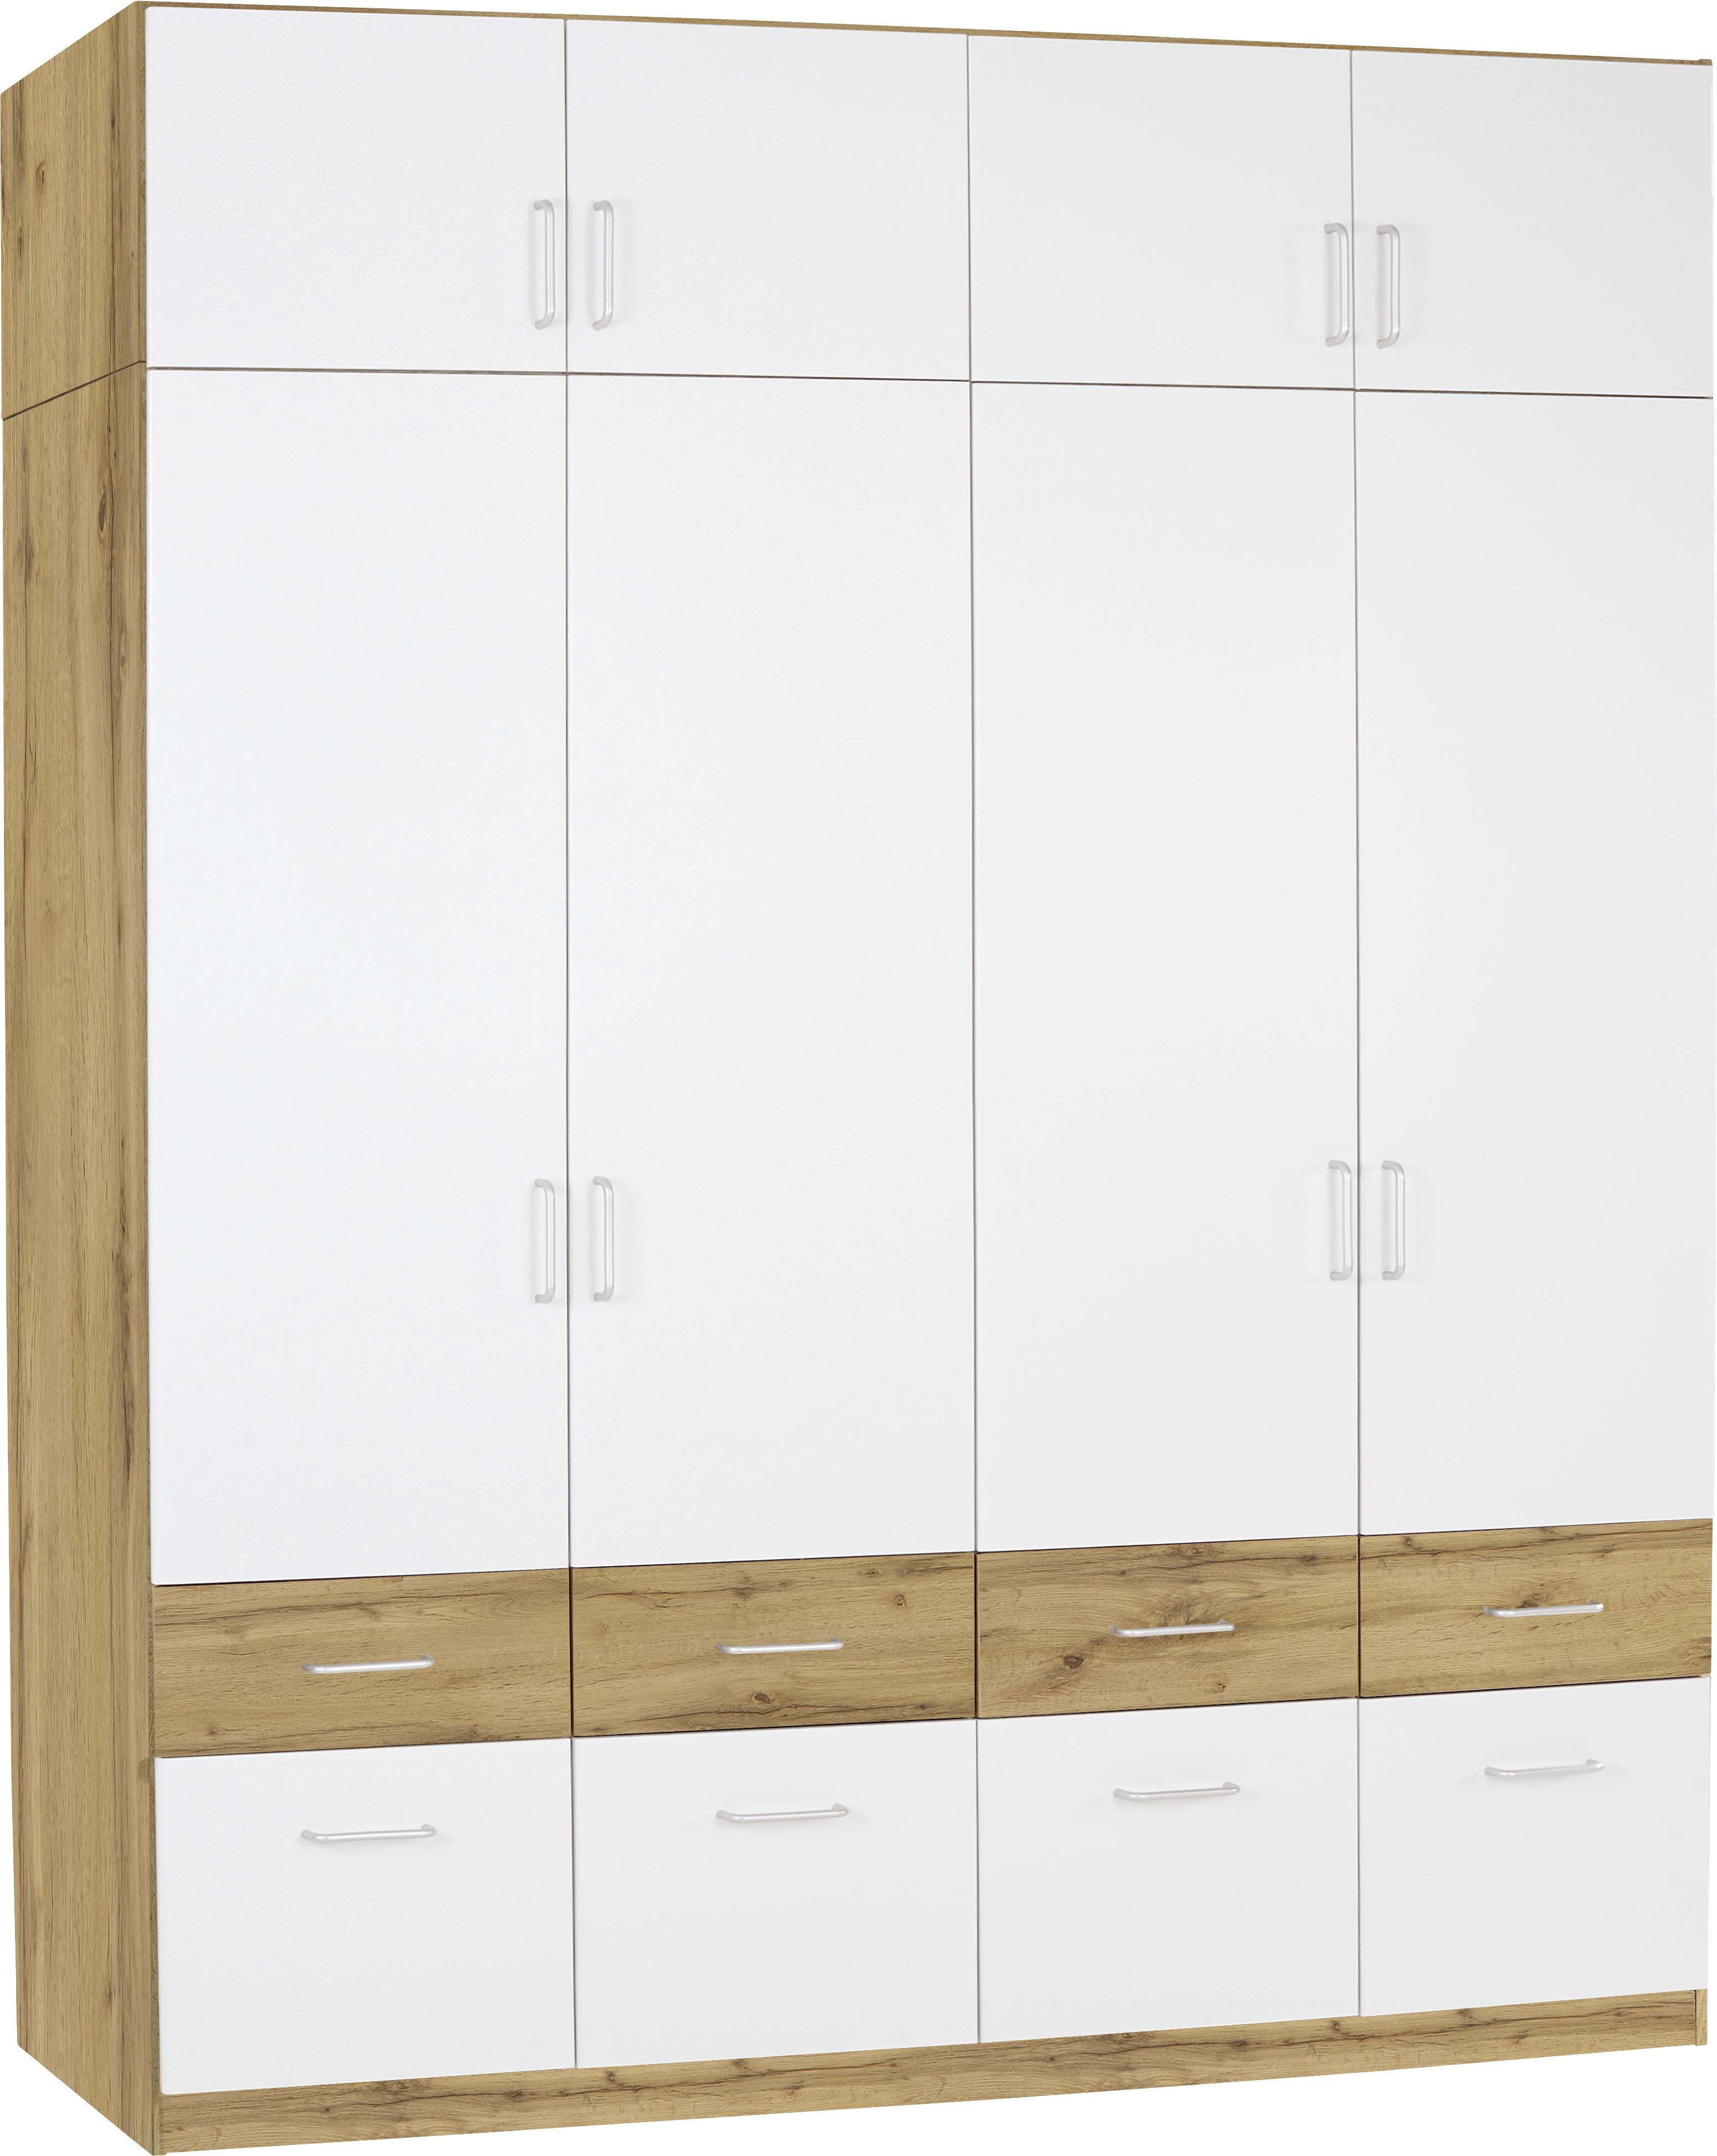 Dulap auxiliar superior Aalen Extra - alb/culoare lemn stejar, Konventionell, material pe bază de lemn (181/39/54cm)